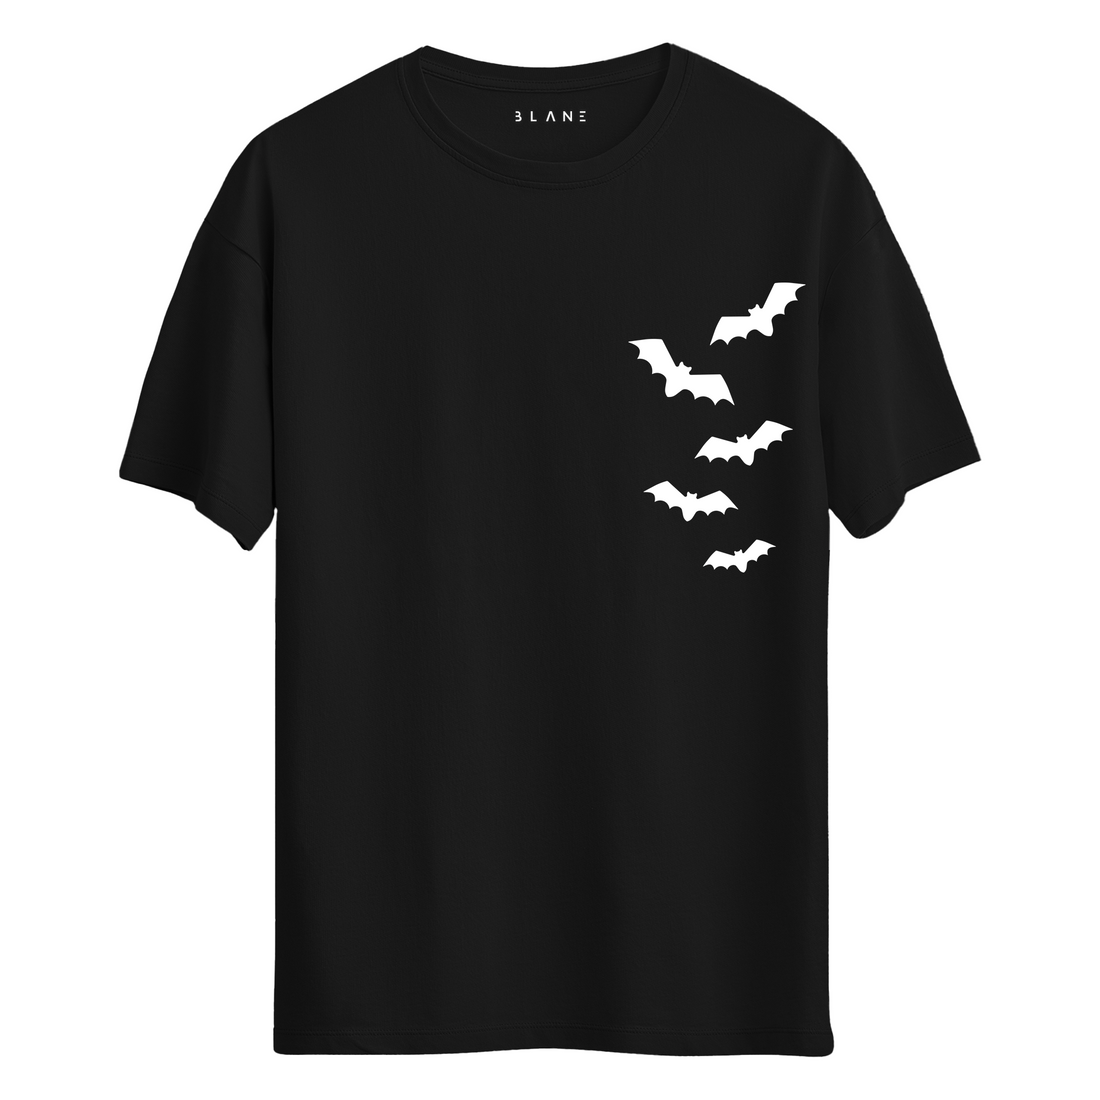 Bat Halloween - T-Shirt